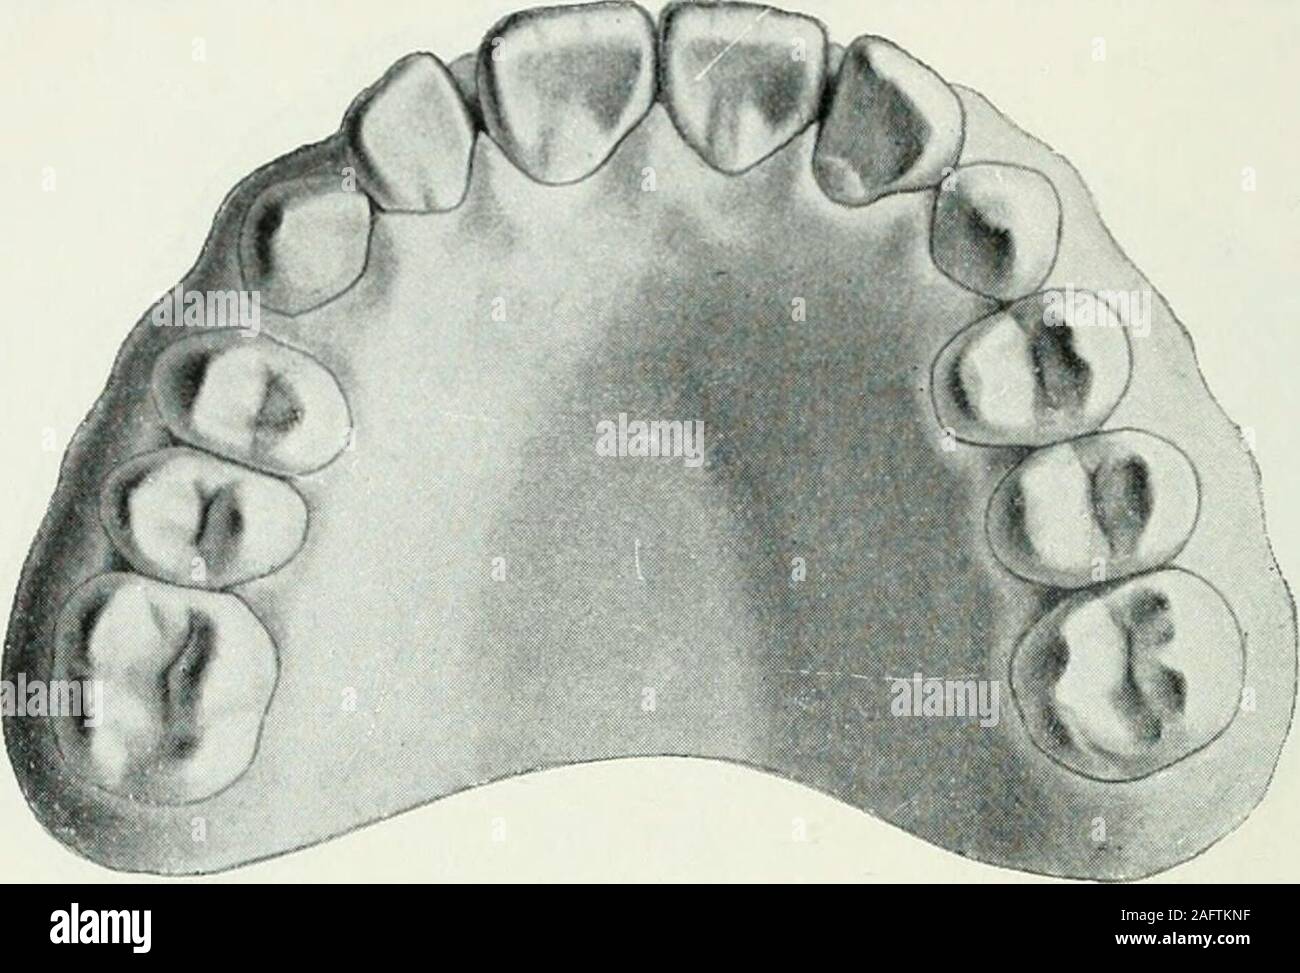 . Lehrbuch der orthodontie fur studierende und zahnartze mit enschluss der geschichte der orthodontie. Fig. 126. mußten. Ohne Fixation ist ein Rückfall aber unvermeidlich. Imübrigen ist allerdings klar, daß durch die Siegfriedschen Federnbedeutende Kräfte ausgeübt werden können, die Federn also fürähnliche Fälle sehr zu empfehlen sind. ß) Lingualwärts durchgebrochene Zähne. Fig. 125 168 II. Therapie der Anomalien. gibt einen Fall wieder, in dem es galt, den rechten oberen,innerhalb des Zahnbogens durchgebrochenen, Eckzahn in dierichtige Lage zu bringen. Da der Unterkiefer bereits vor den. Fig. Stock Photo